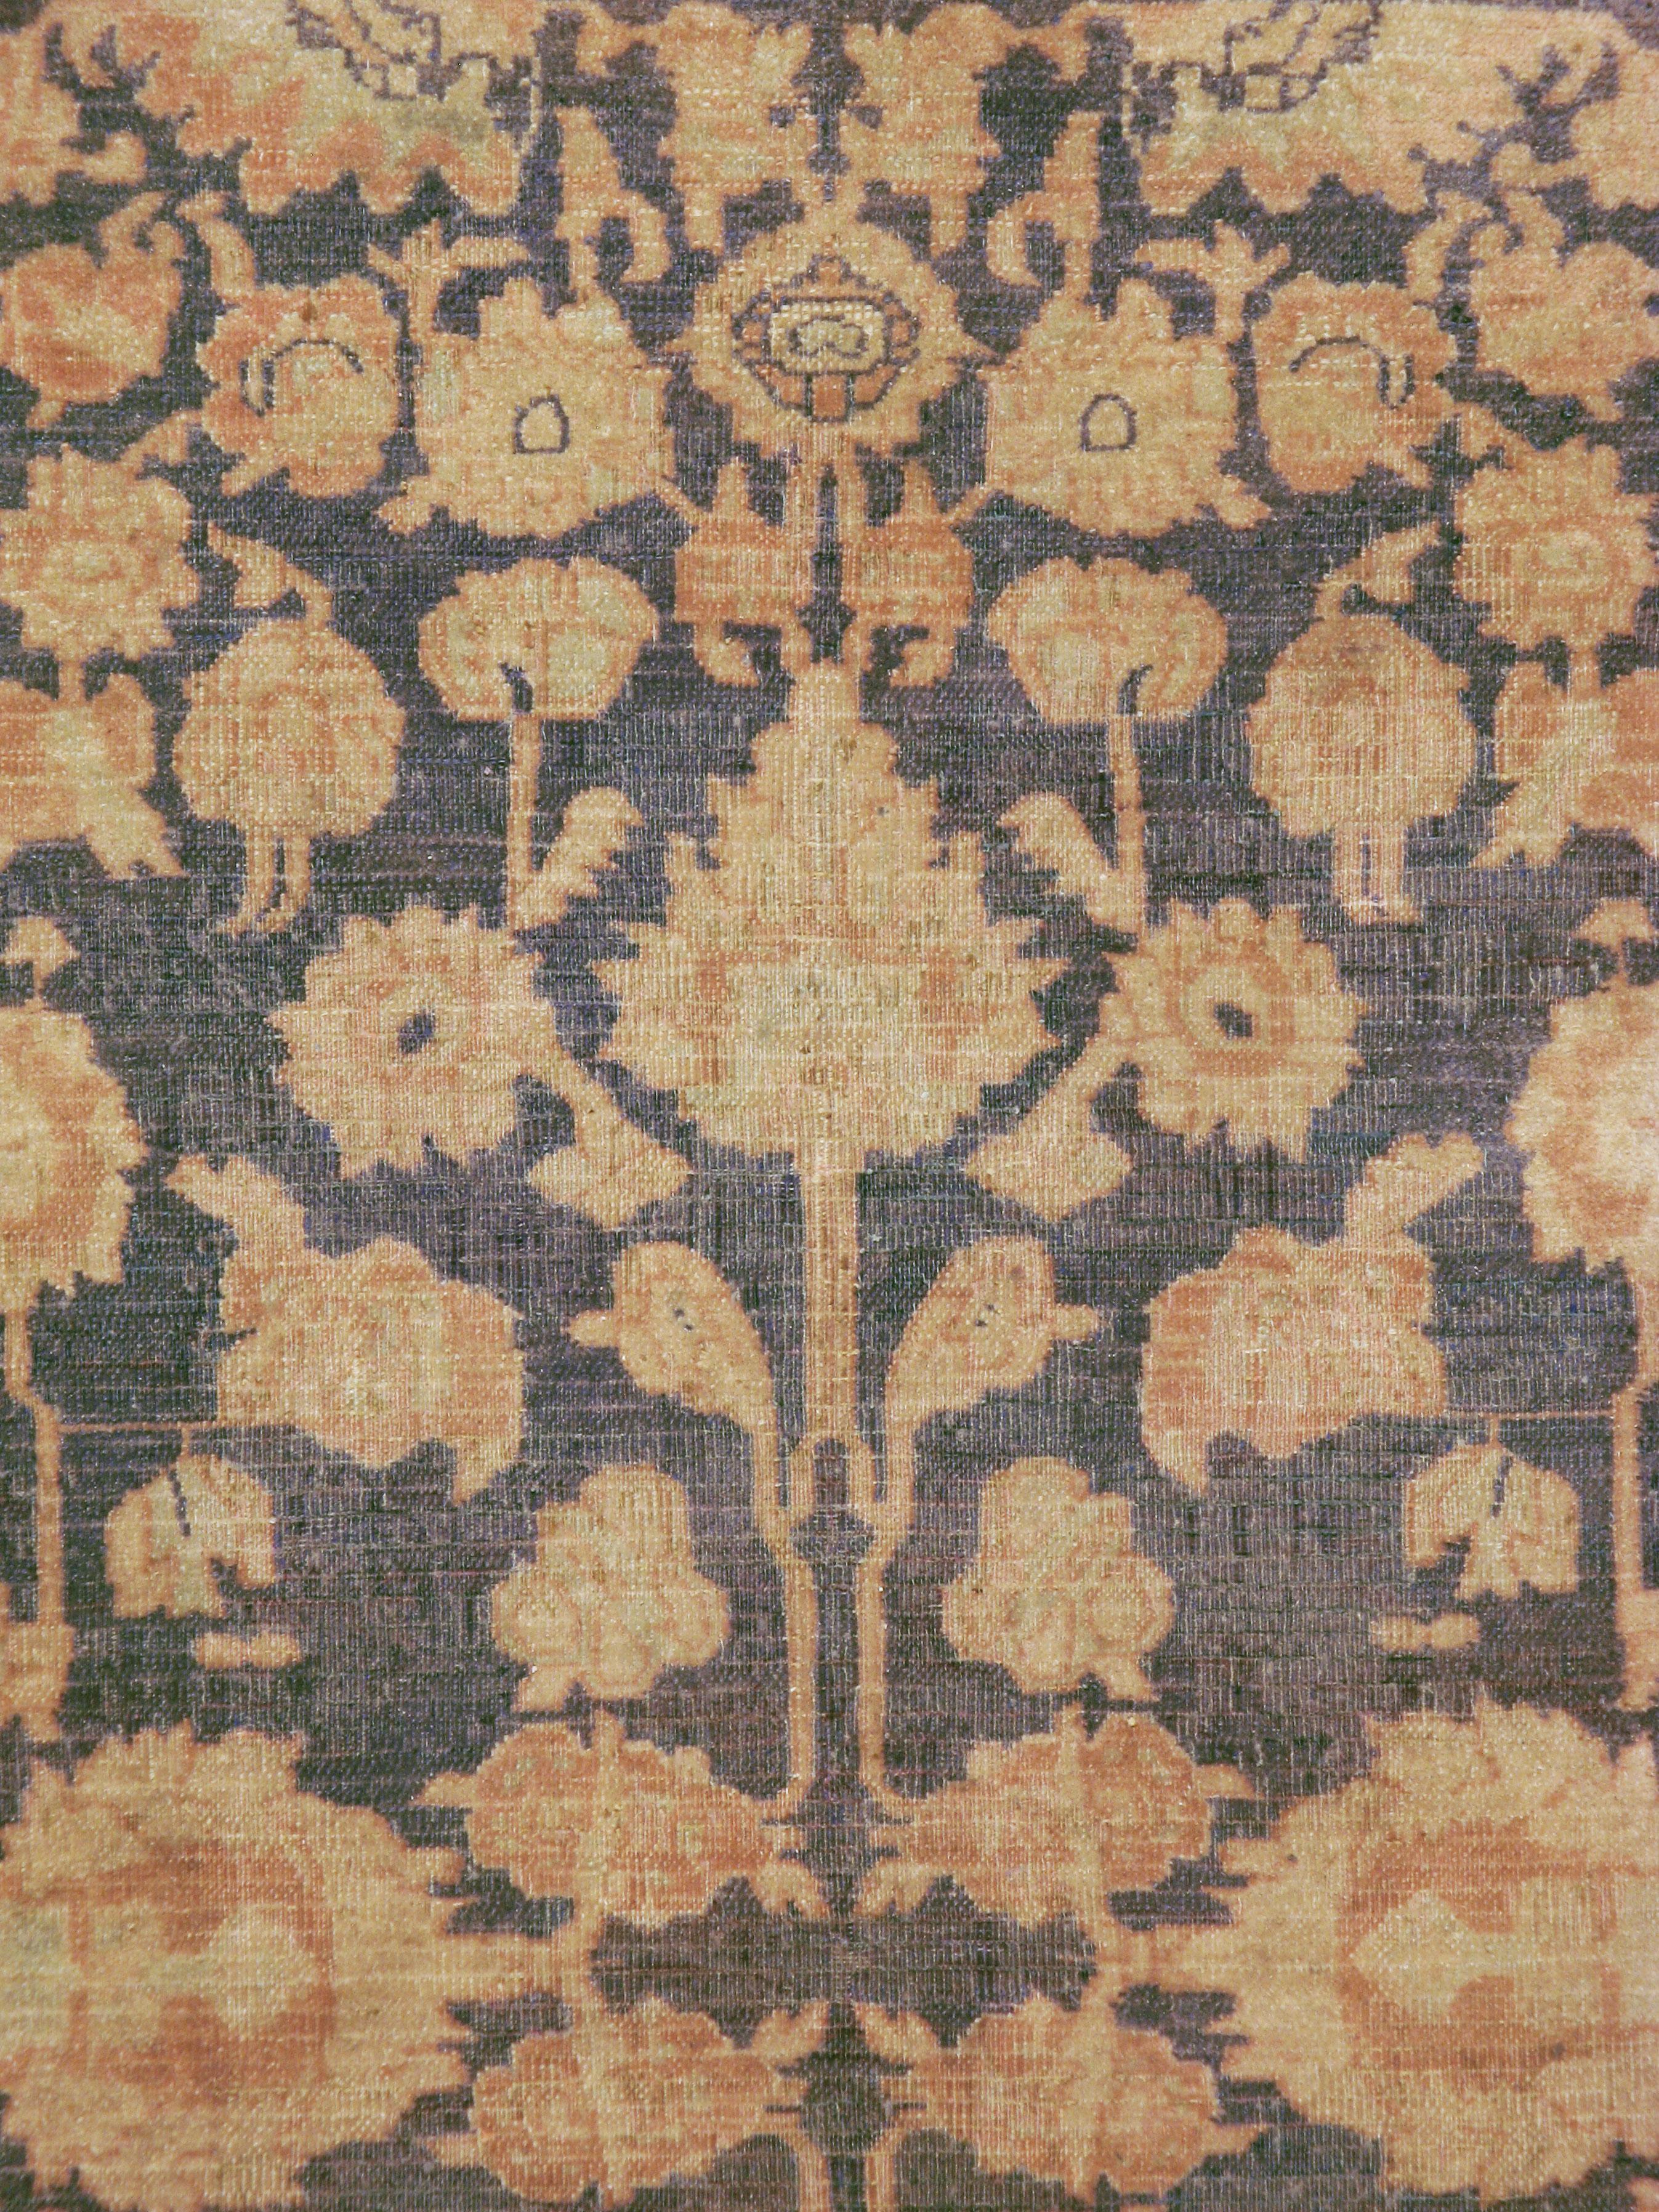 Un tapis indien Agra vintage du milieu du 20e siècle.

Mesures : 5' 9